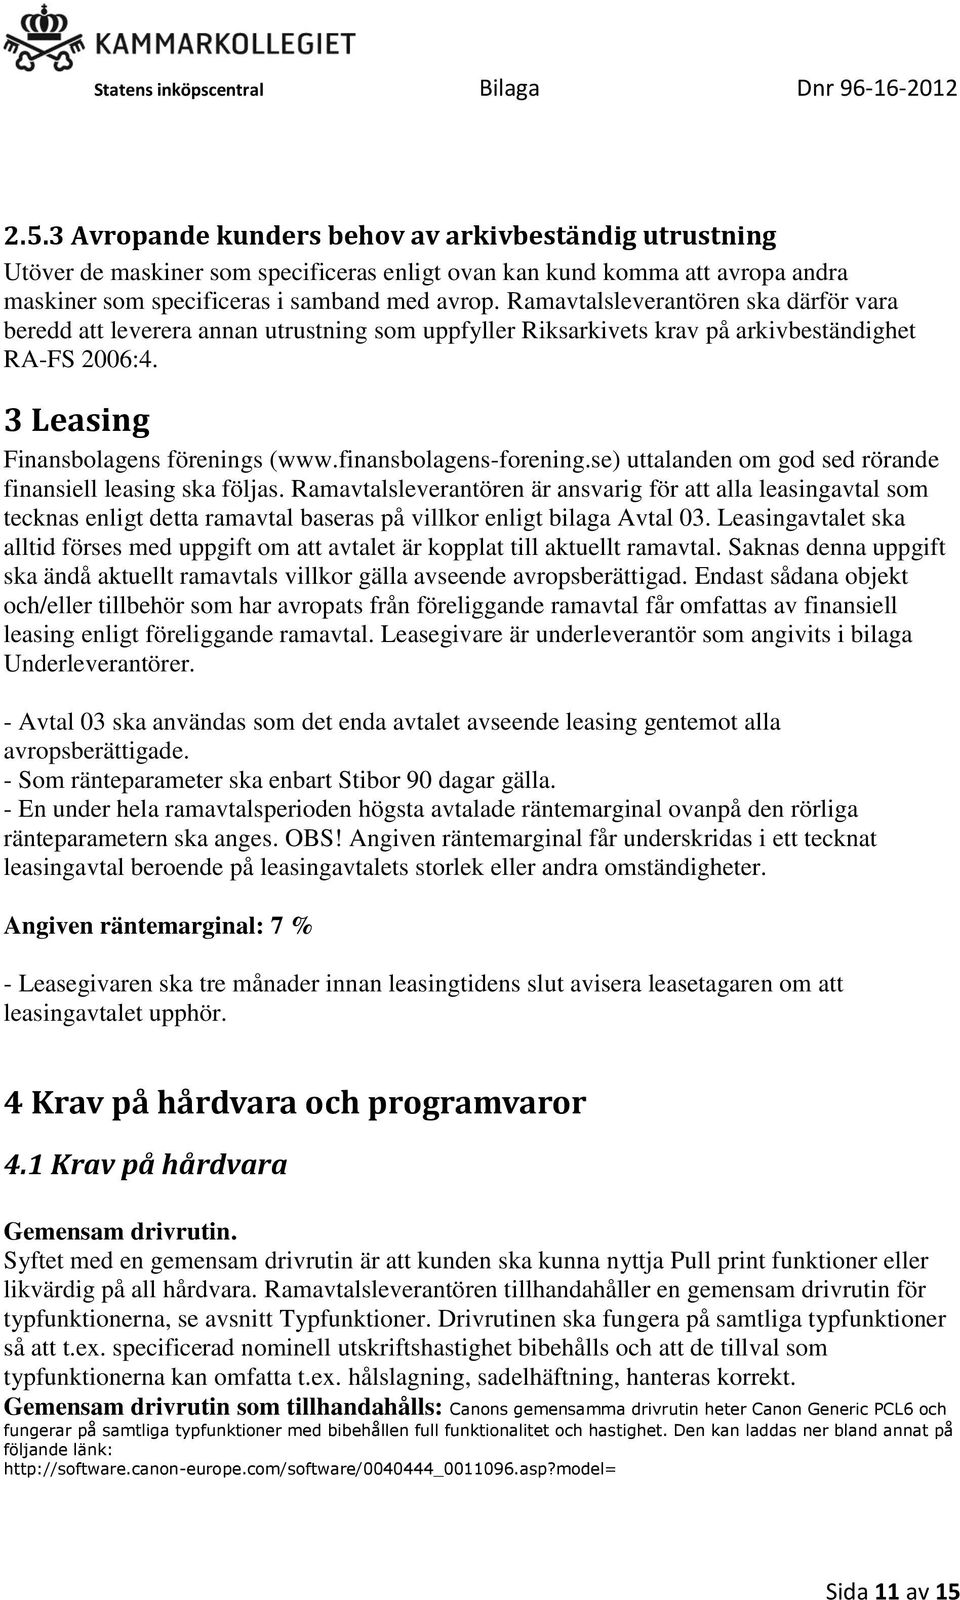 finansbolagens-forening.se) uttalanden om god sed rörande finansiell leasing ska följas.